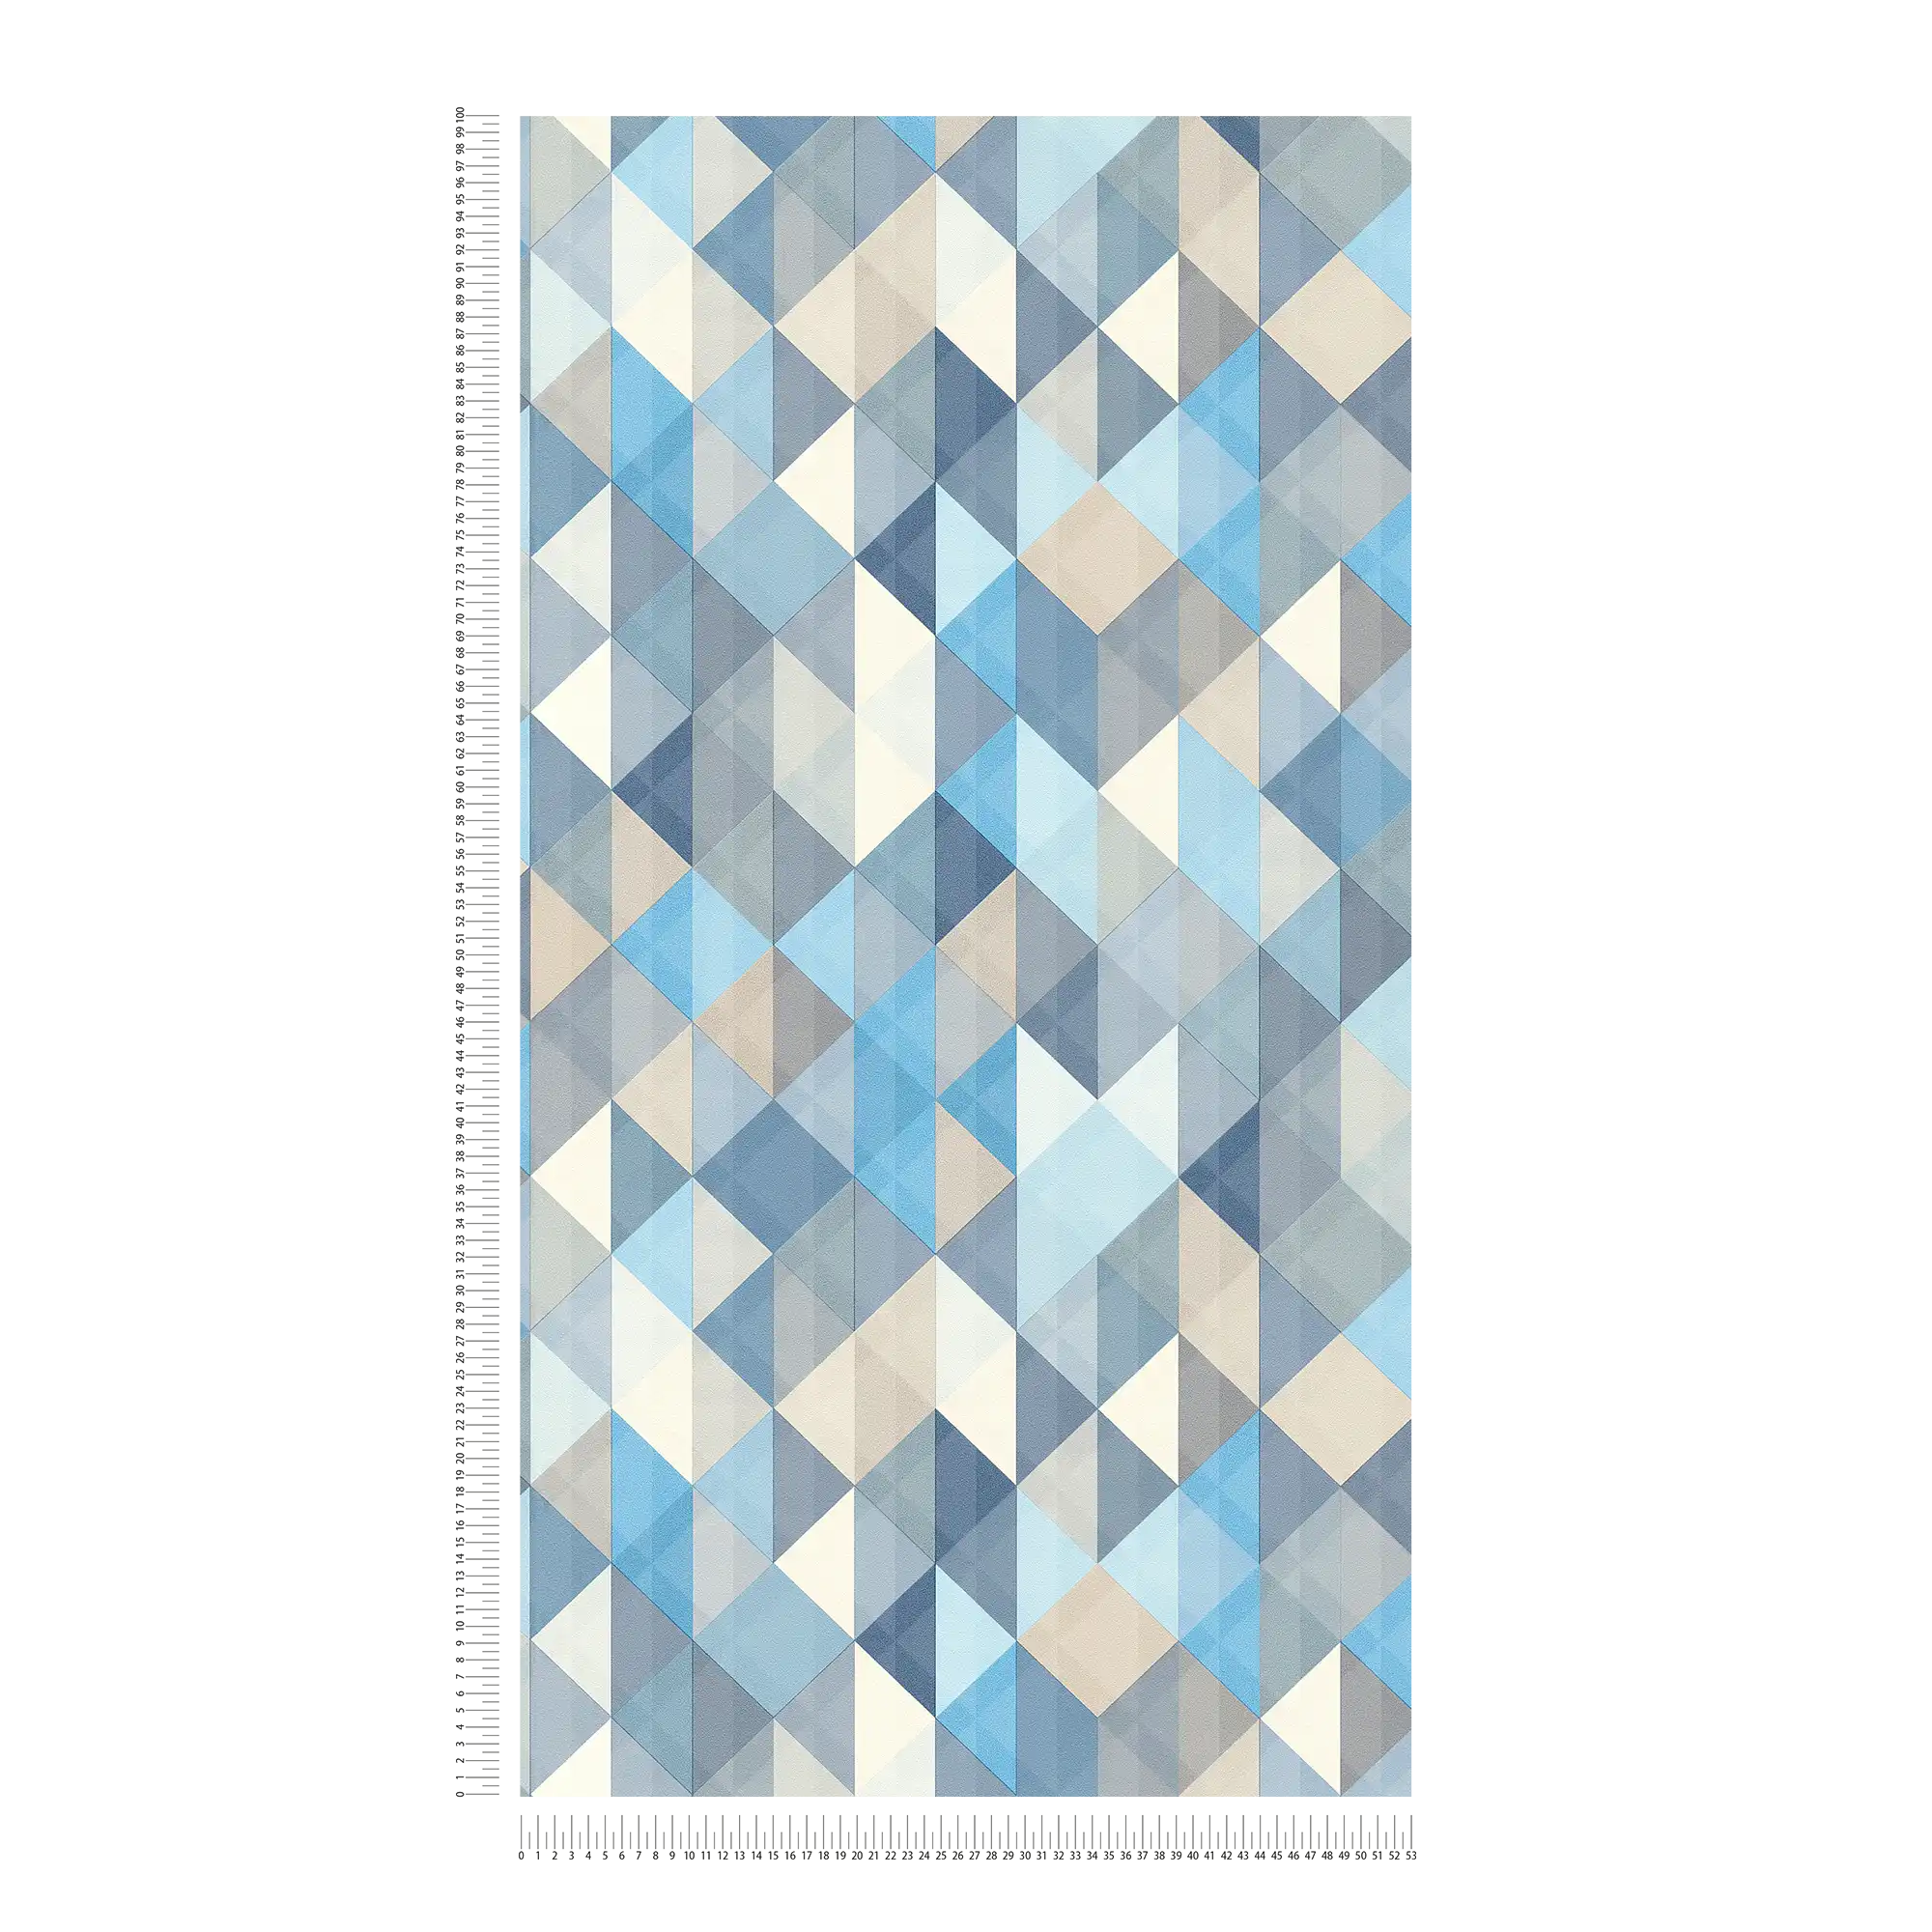             Behang in Scandinavische stijl met geometrisch patroon - blauw, grijs, beige
        